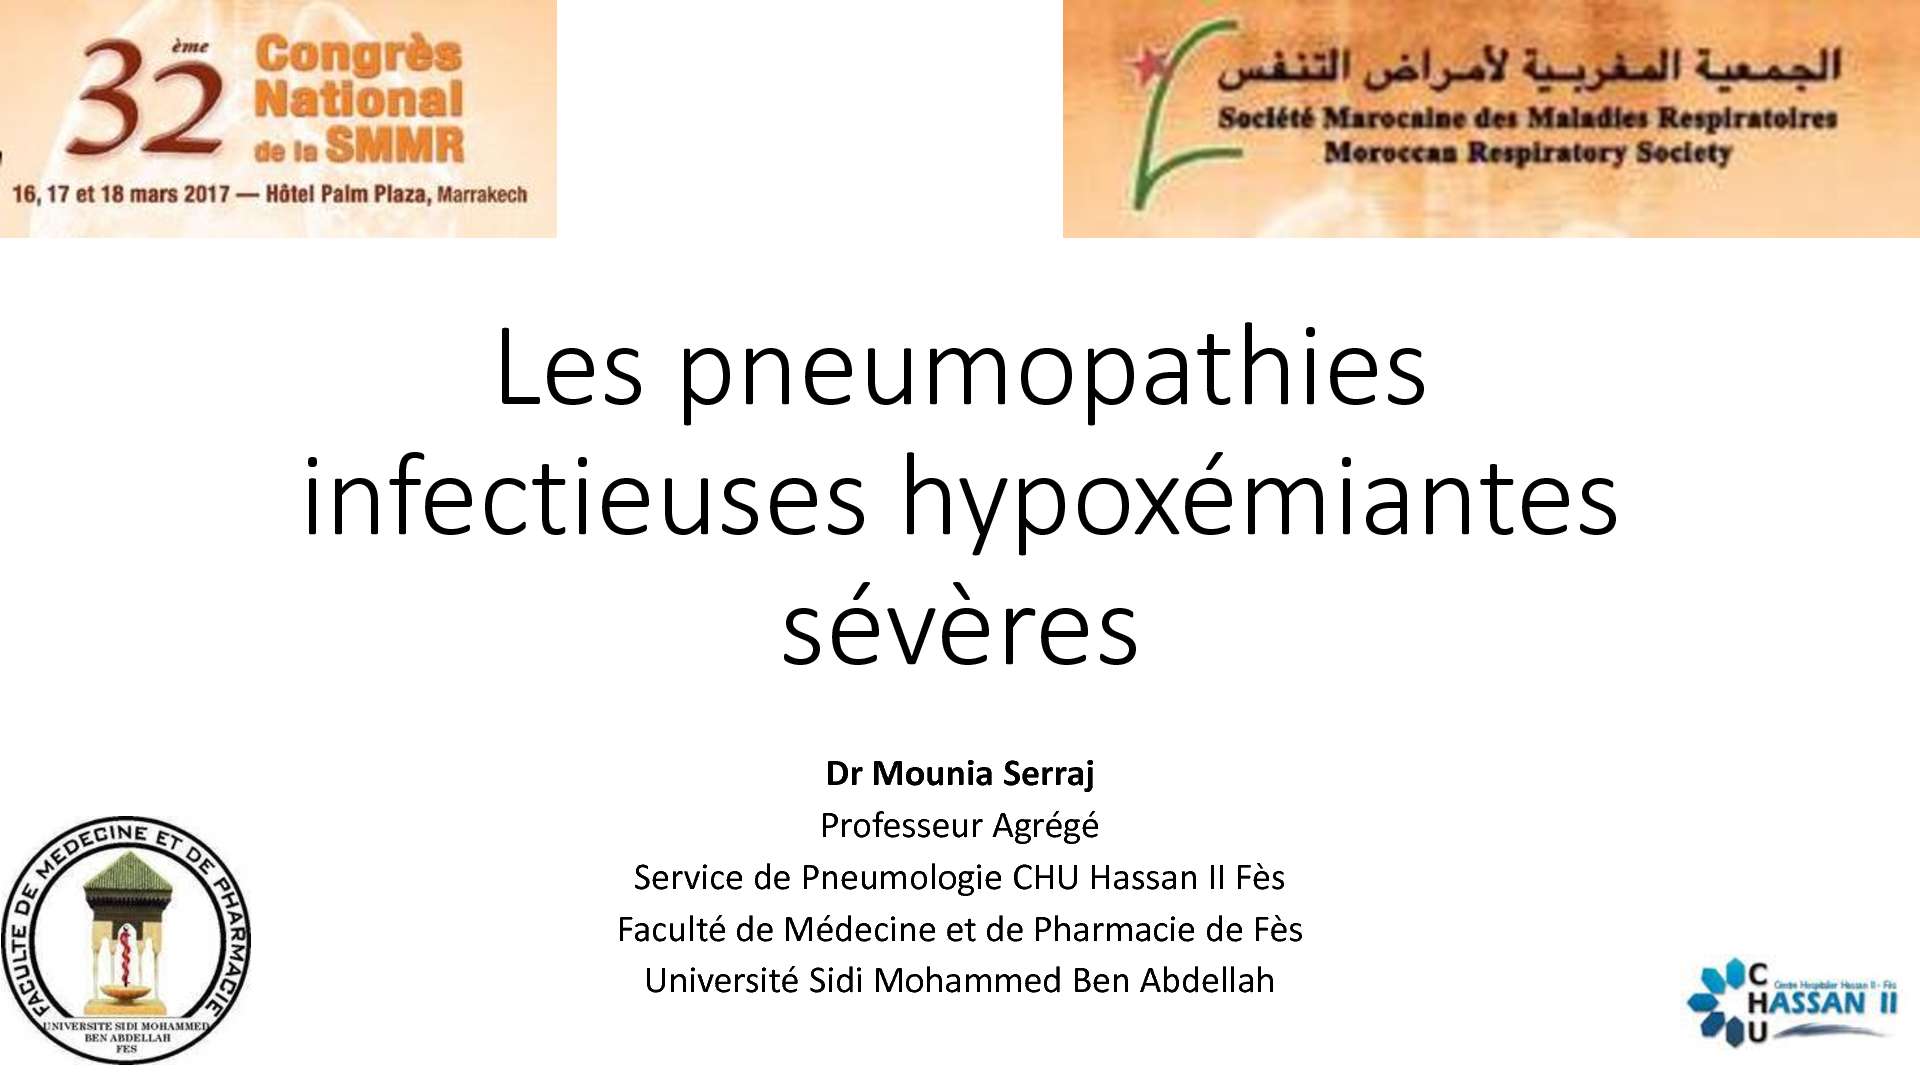 Les pneumopathies infectieuses hypoxémiantes sévères. M. SERRAJ (Fès)